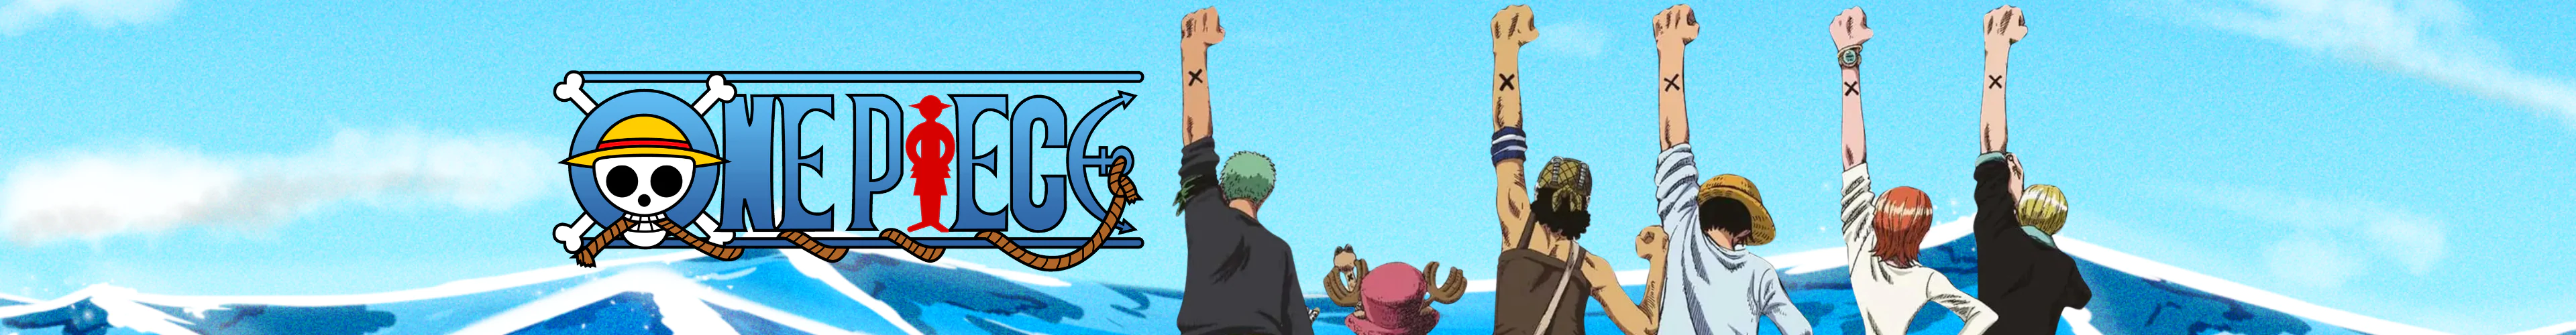 One Piece schwimmausrüstungen banner